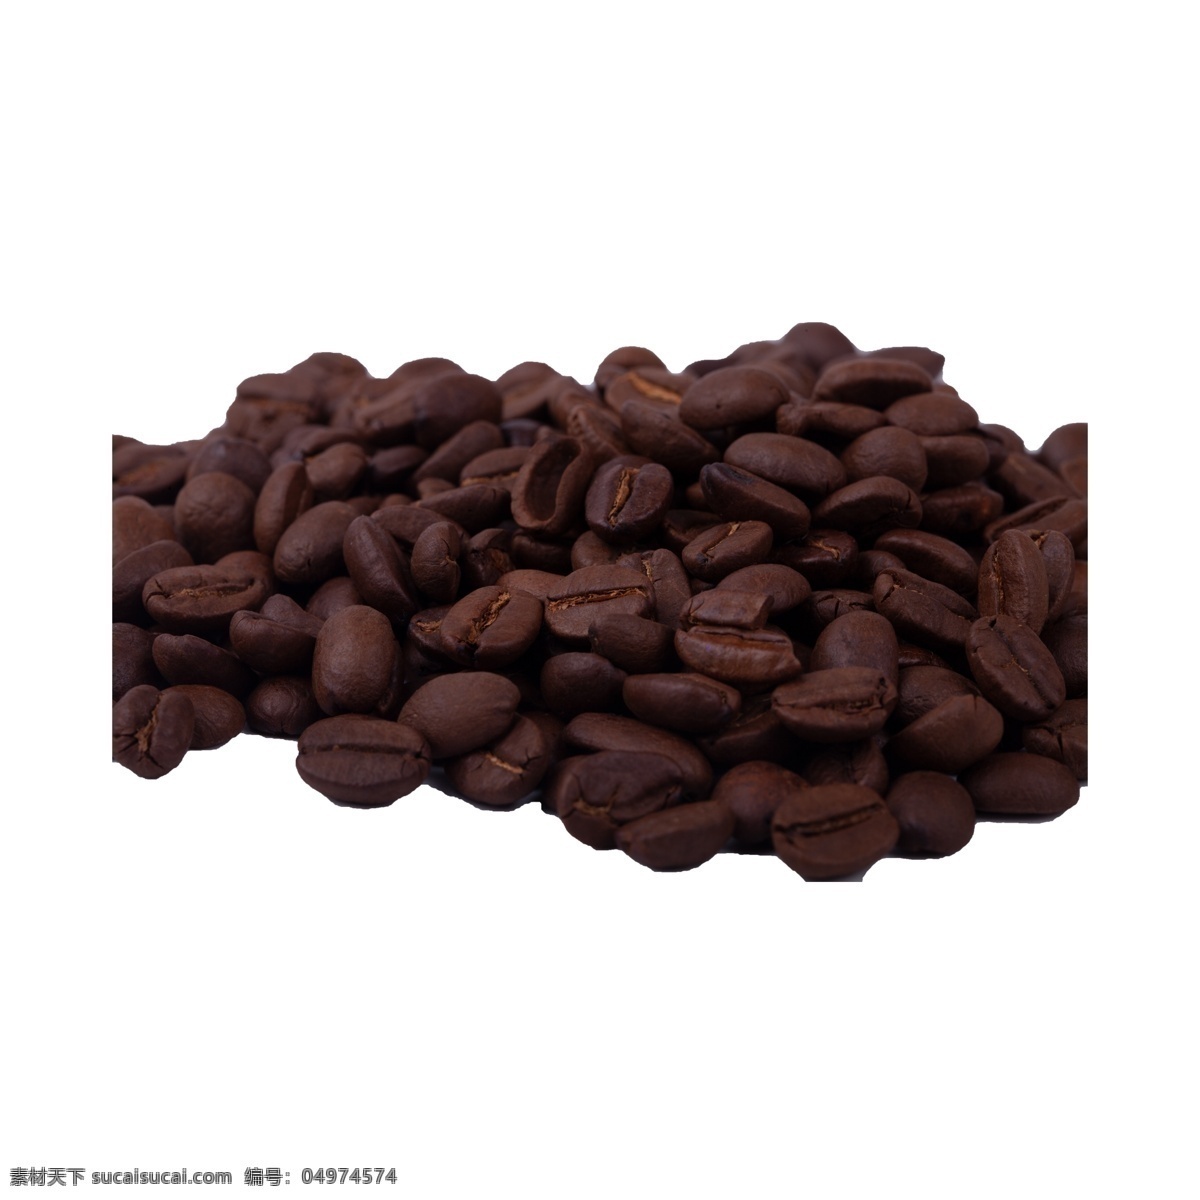 咖啡豆 写实 冬季 咖啡 圆形 棕色 热饮 种子 褐色 豆子 颗粒 饮料 高级 许多 免 抠